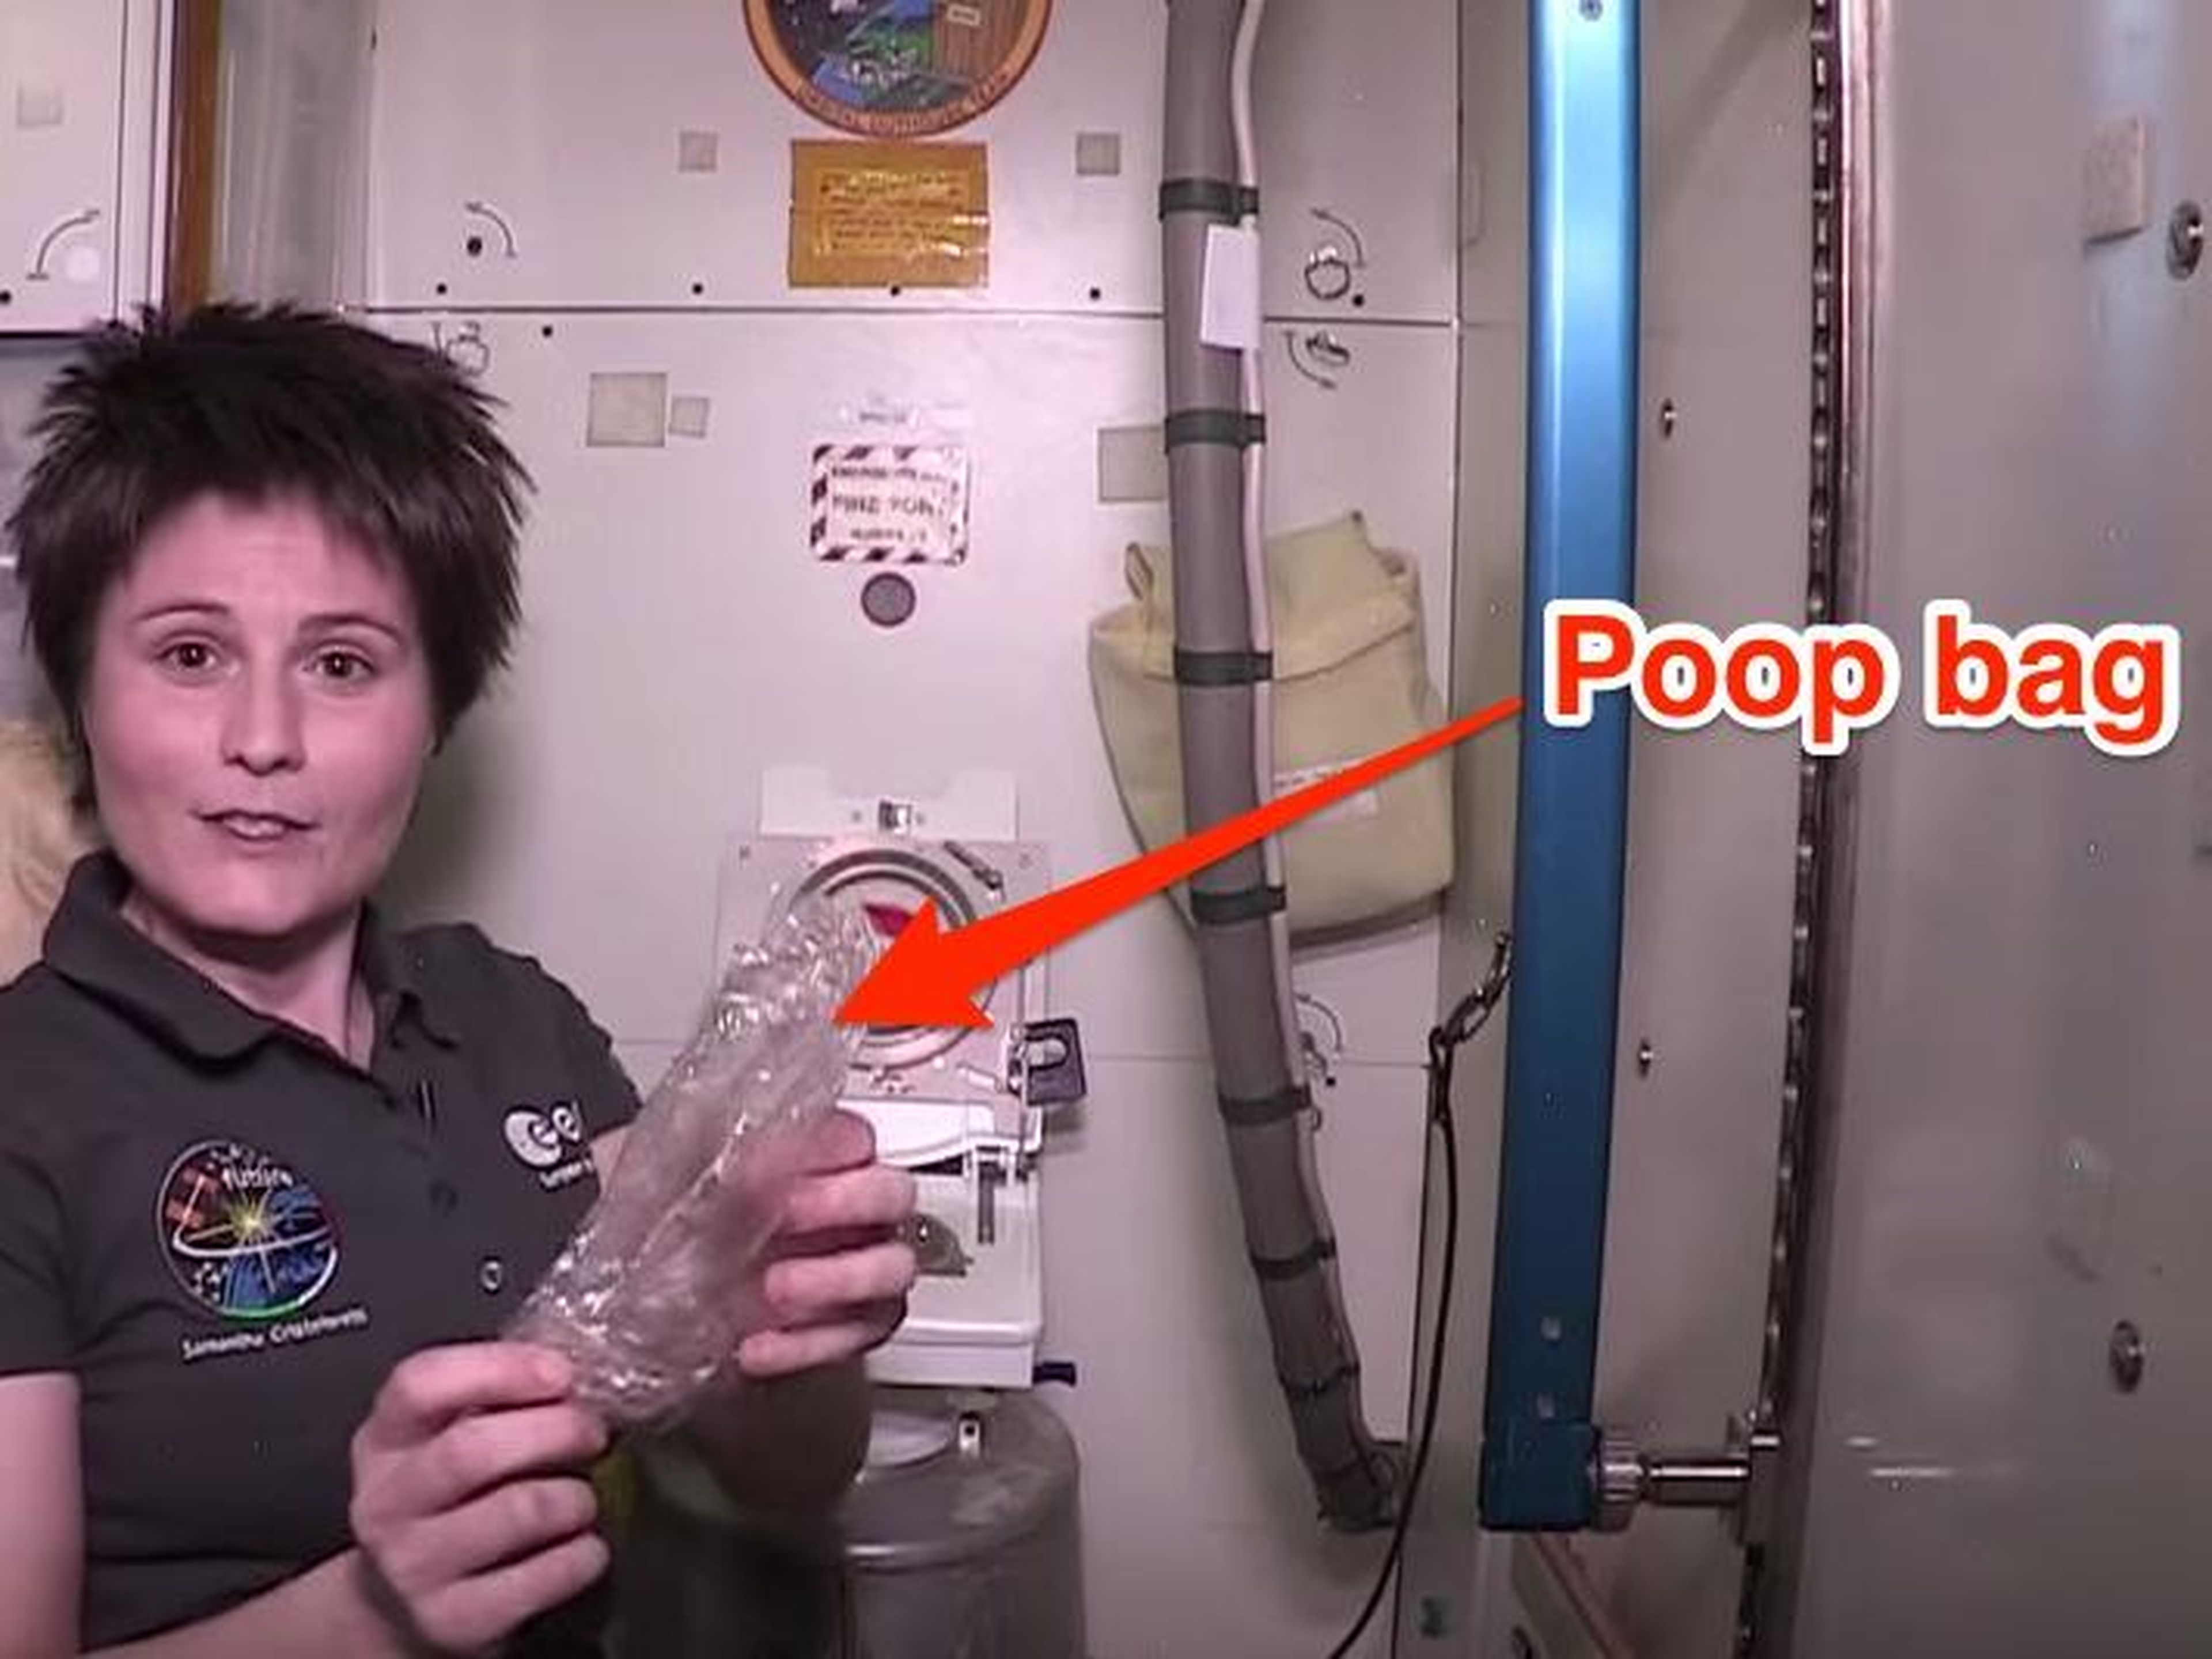 La astronauta Samantha Cristoforetti explica cómo usar el baño en la Estación Espacial.